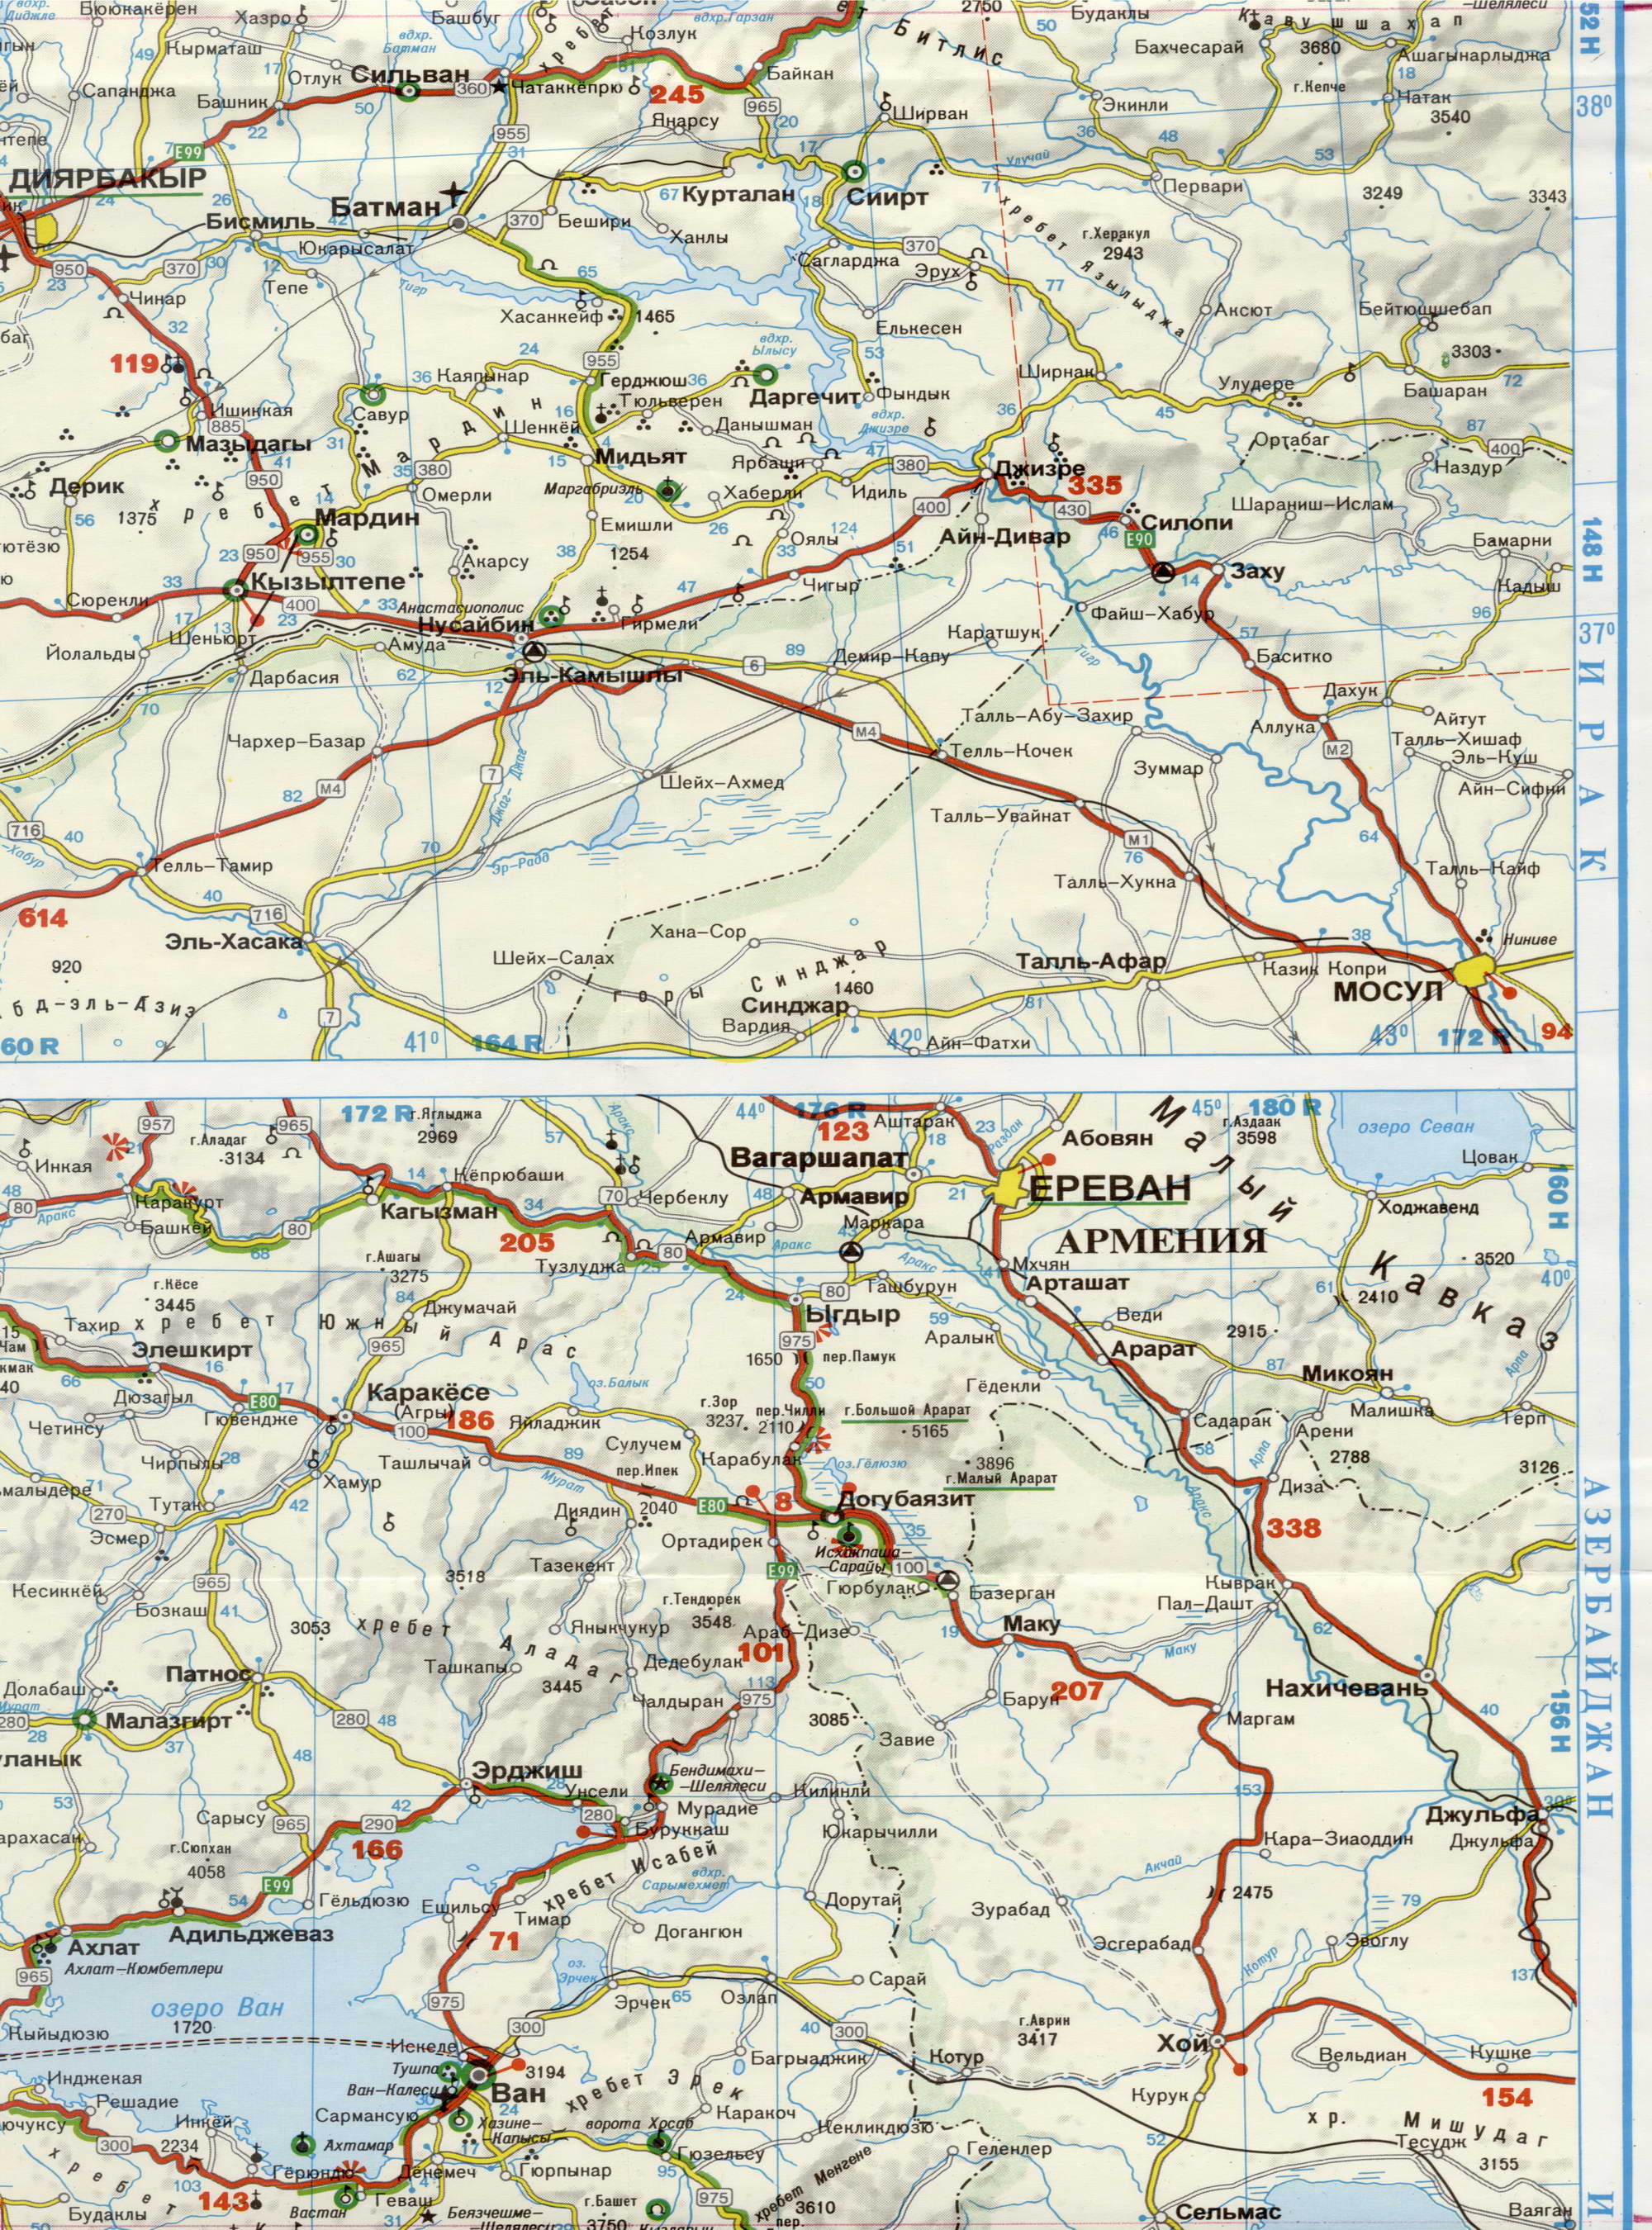 Автомобильная карта Турции на русском языке. Большая подробная карта Турции на русском языке. Автомобильная карта Турции, E1 - 